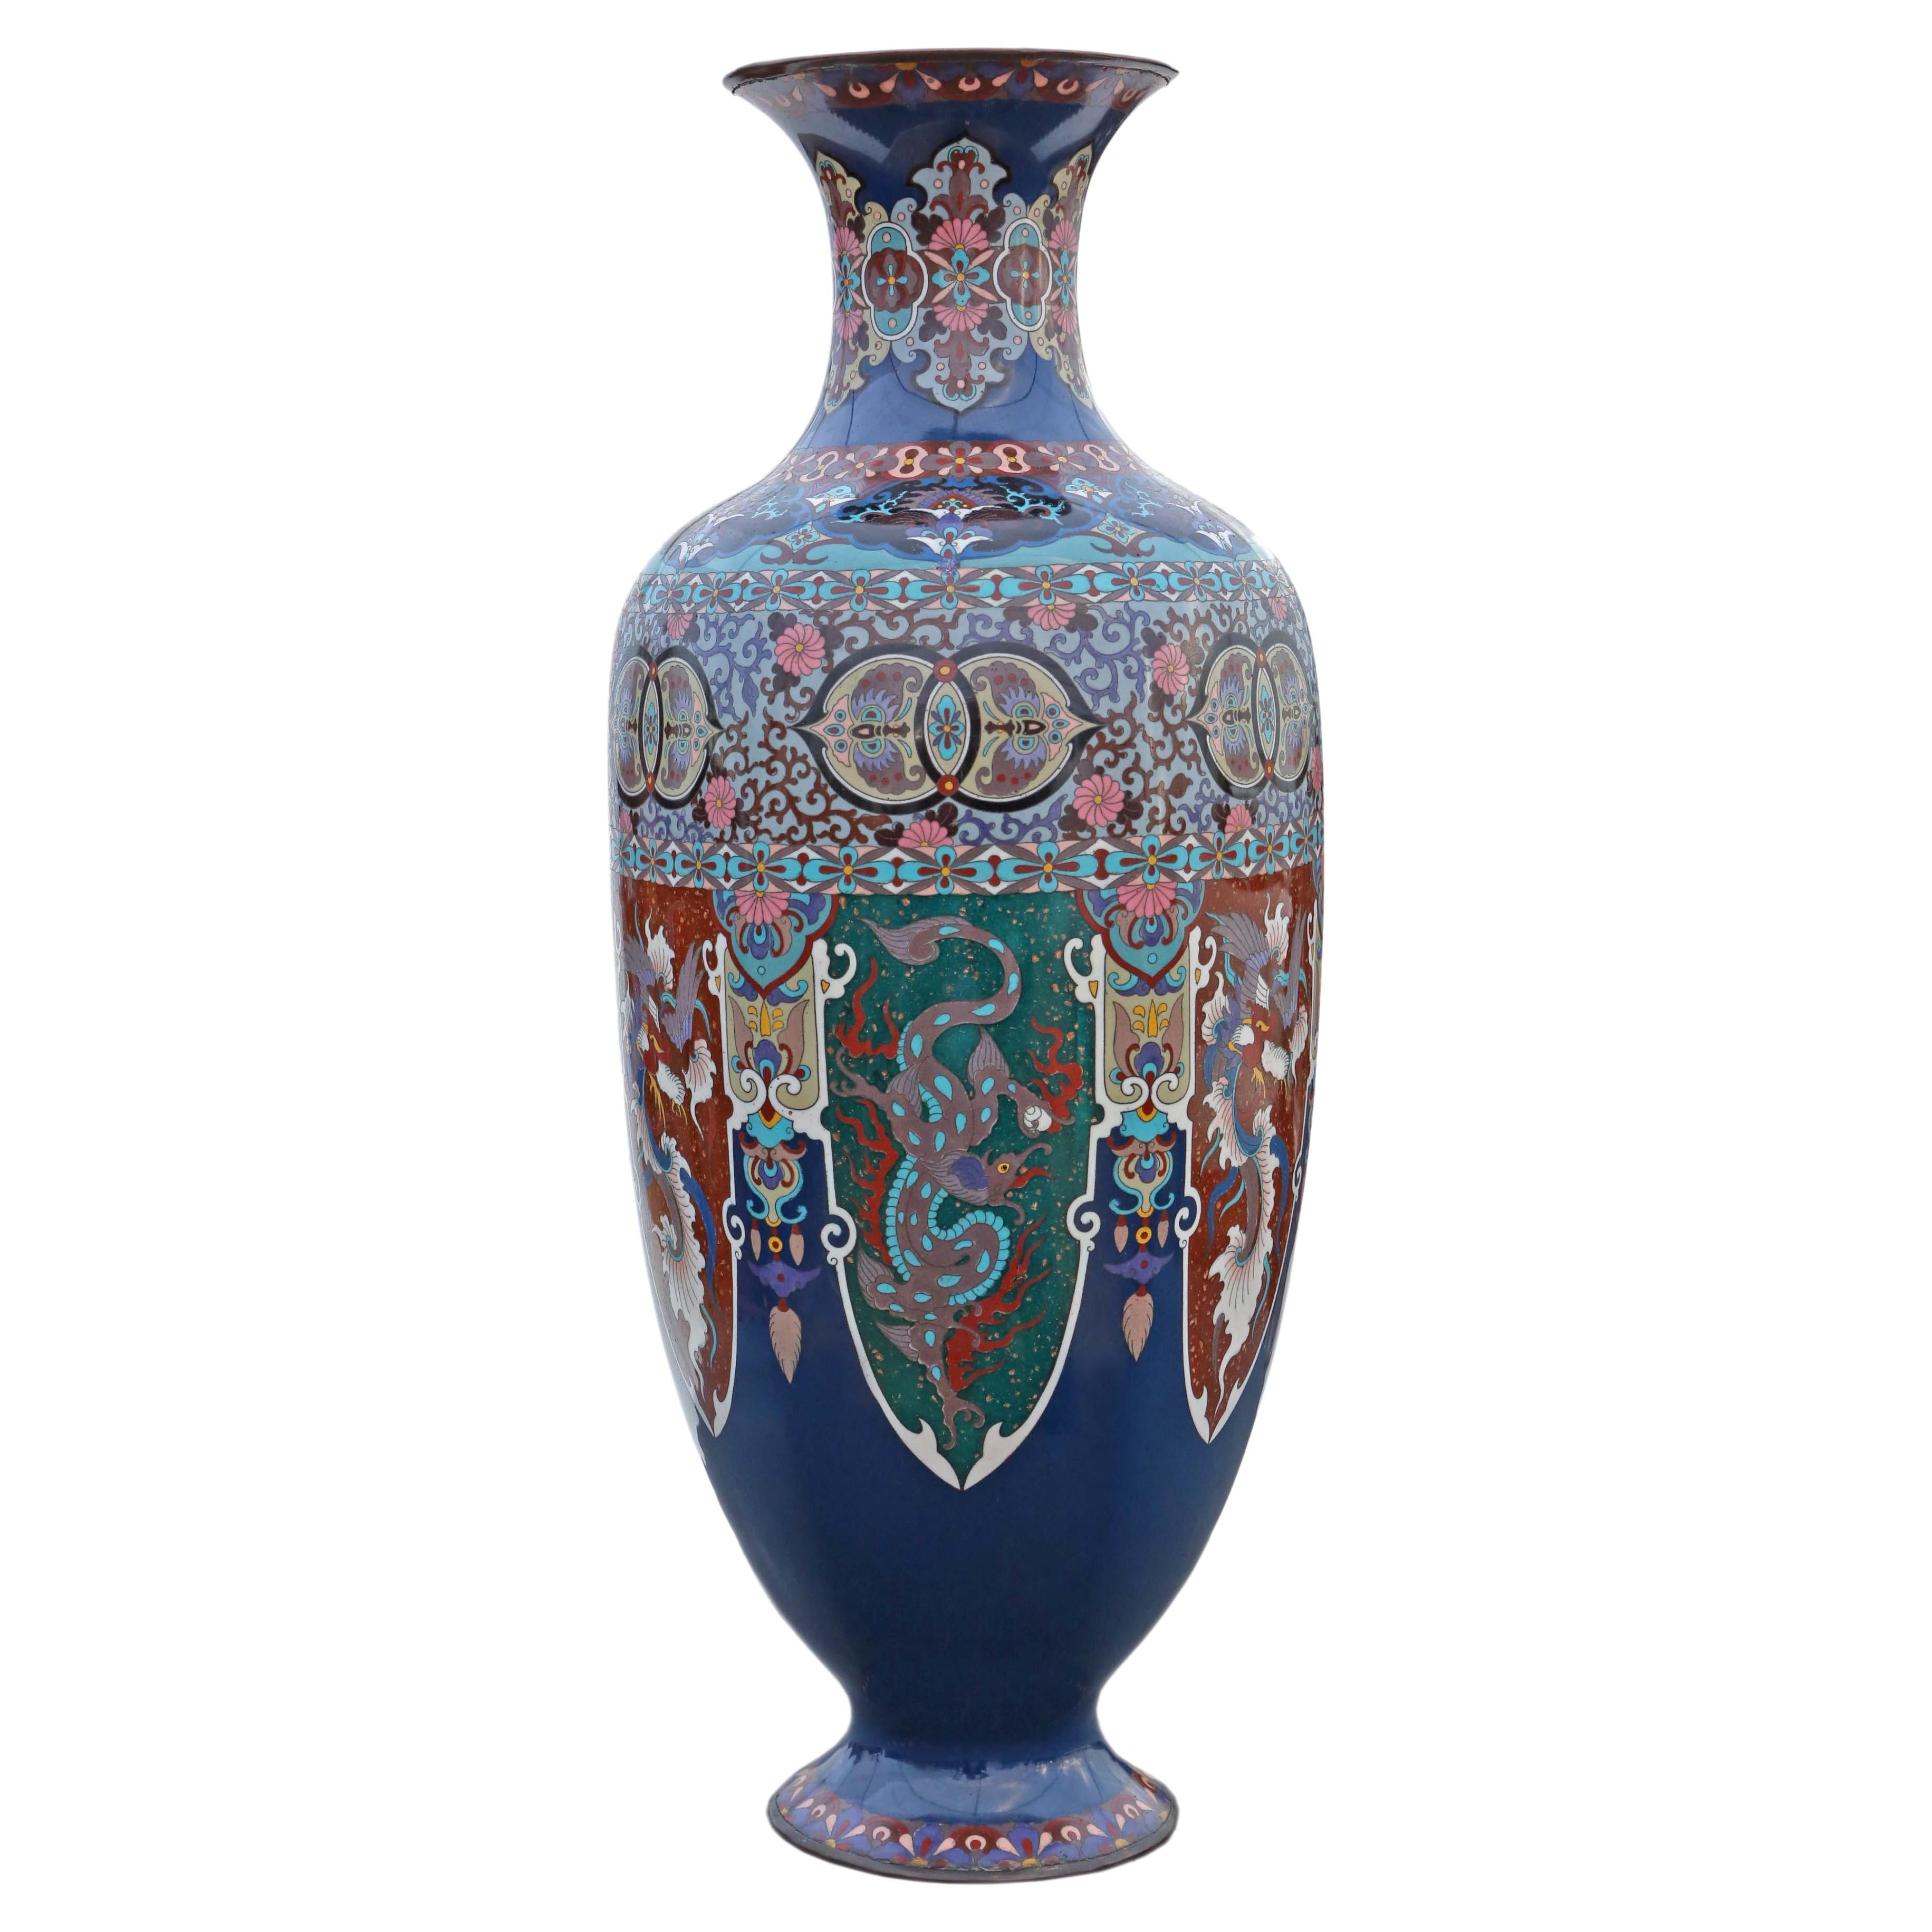 Grand vase cloisonné japonais du 19ème siècle - Décoration orientale ancienne